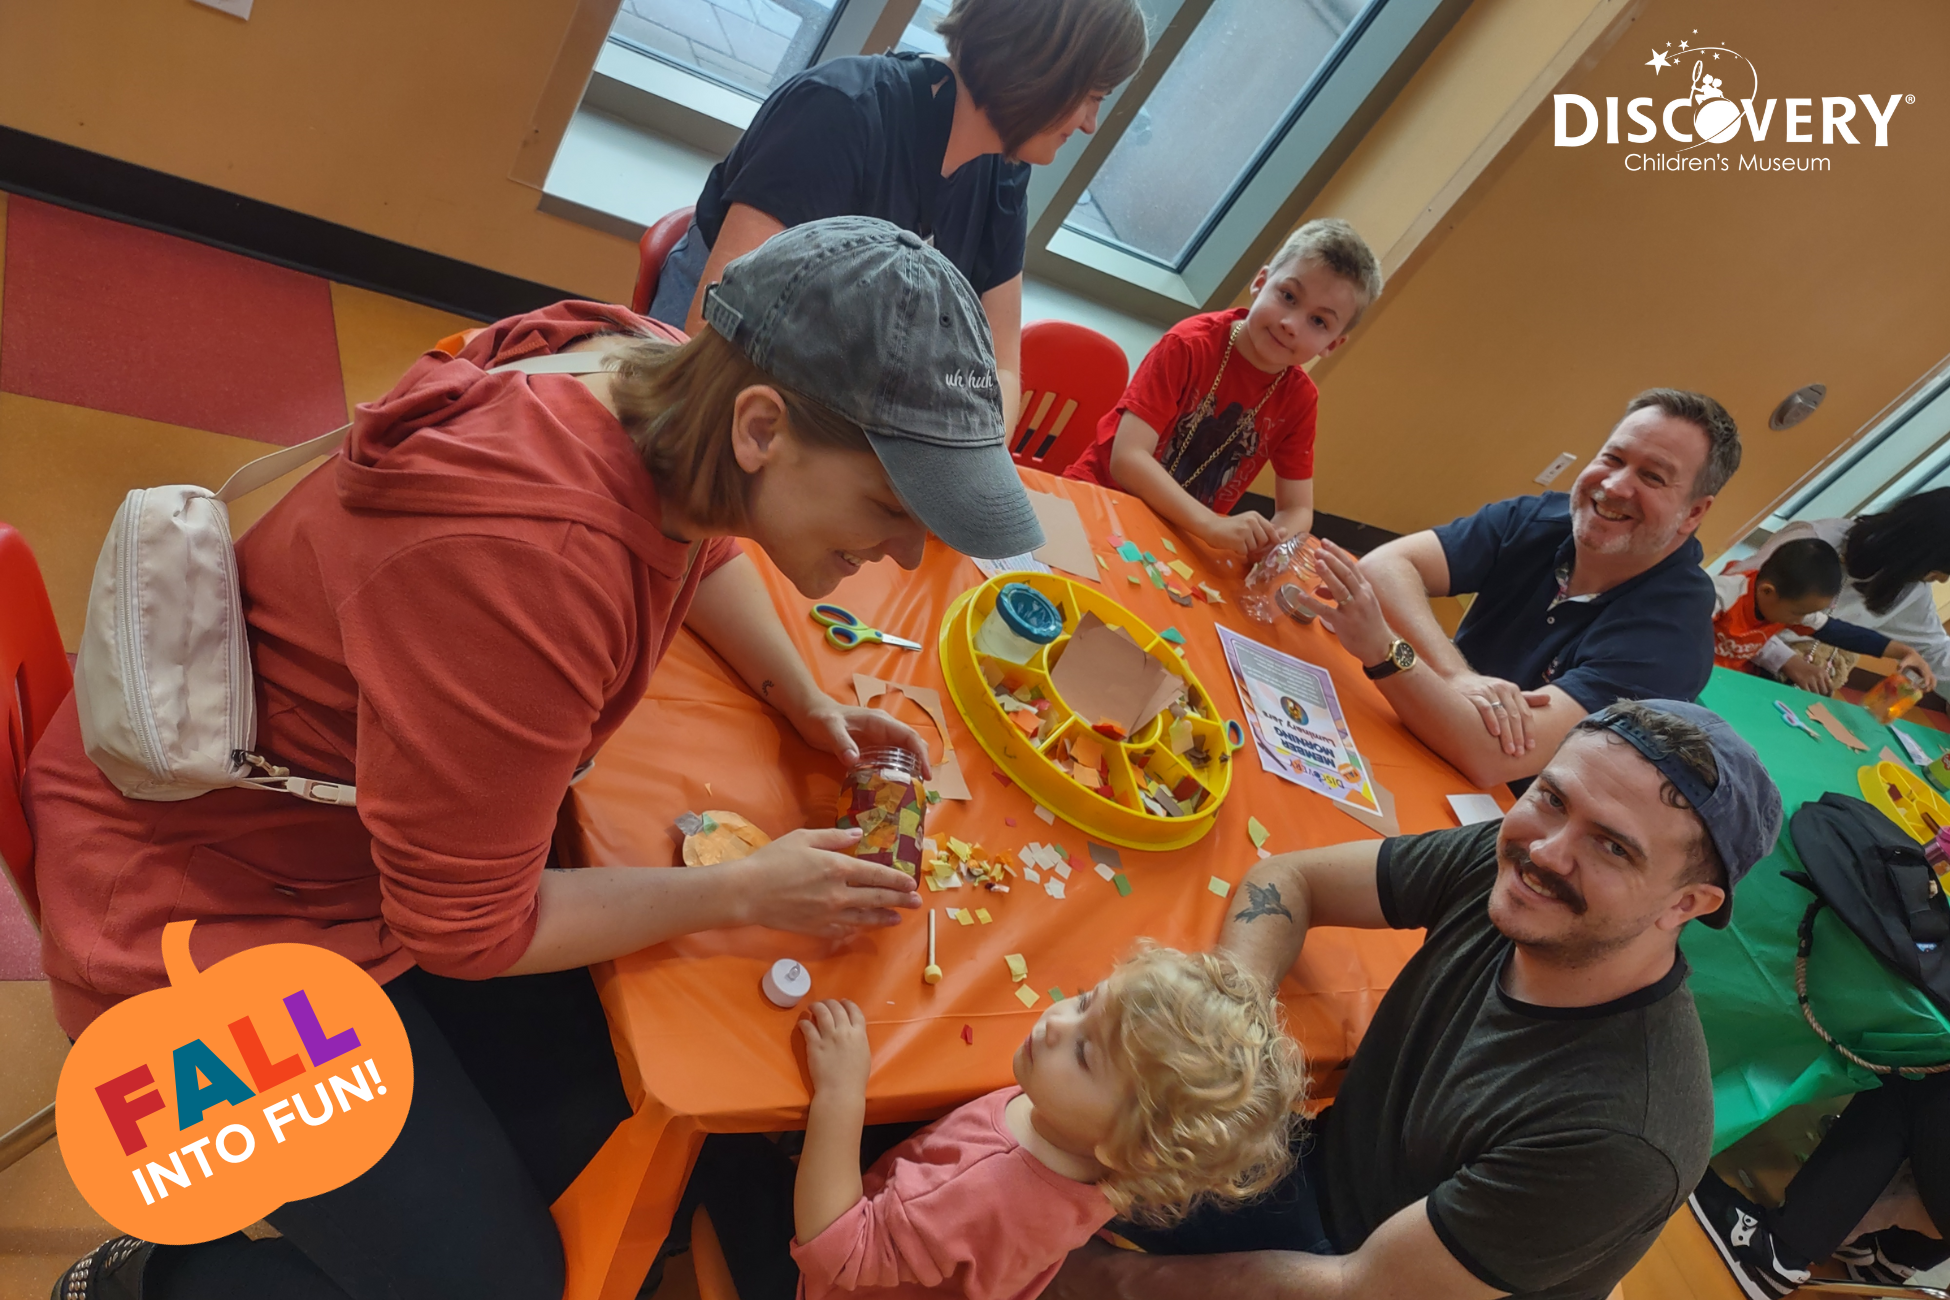 4 名家长和 2 名儿童坐在发现儿童博物馆的橙色小桌旁，桌上摆放着一些彩纸